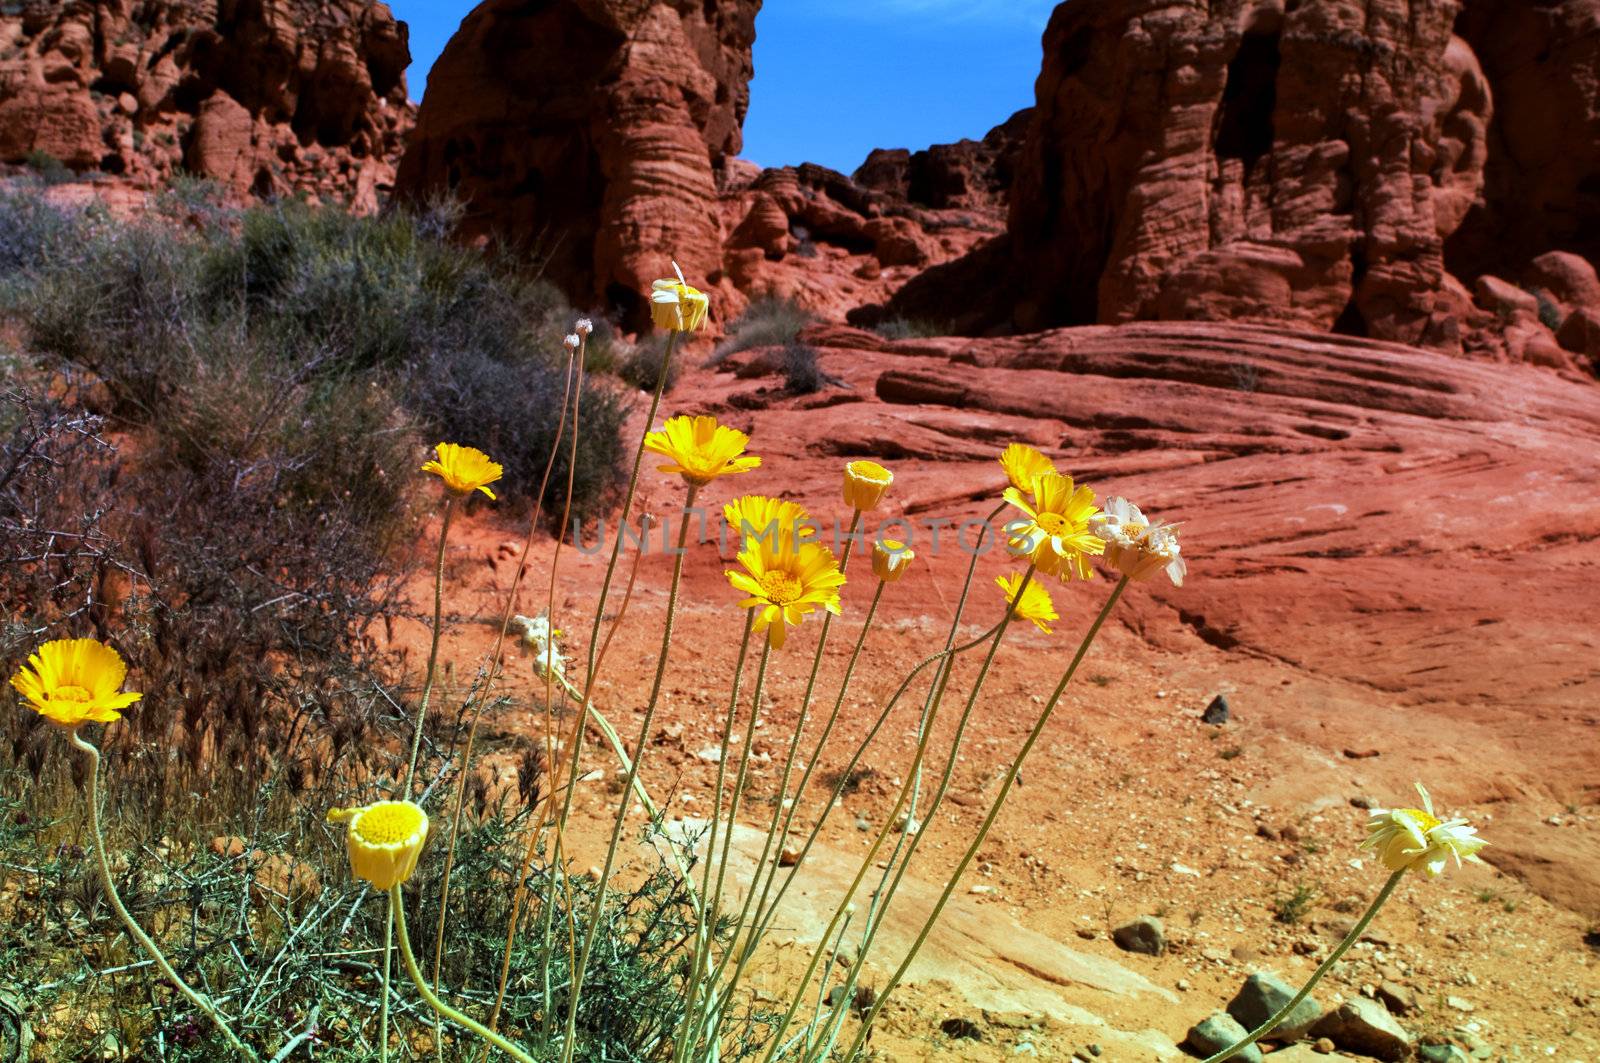 Wild desert flowers in Spring